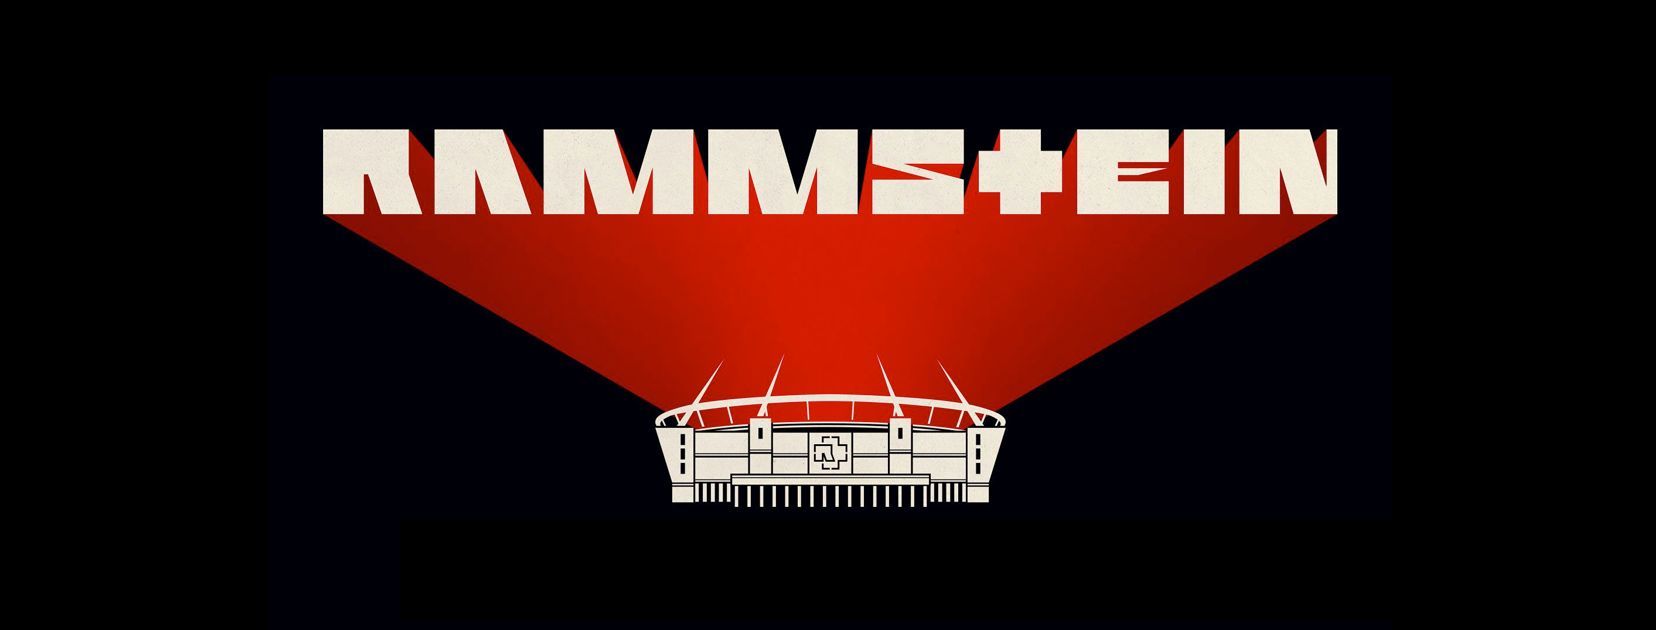 Rammstein: Eventim-Homepage brach beim Ticket-VVK zusammen